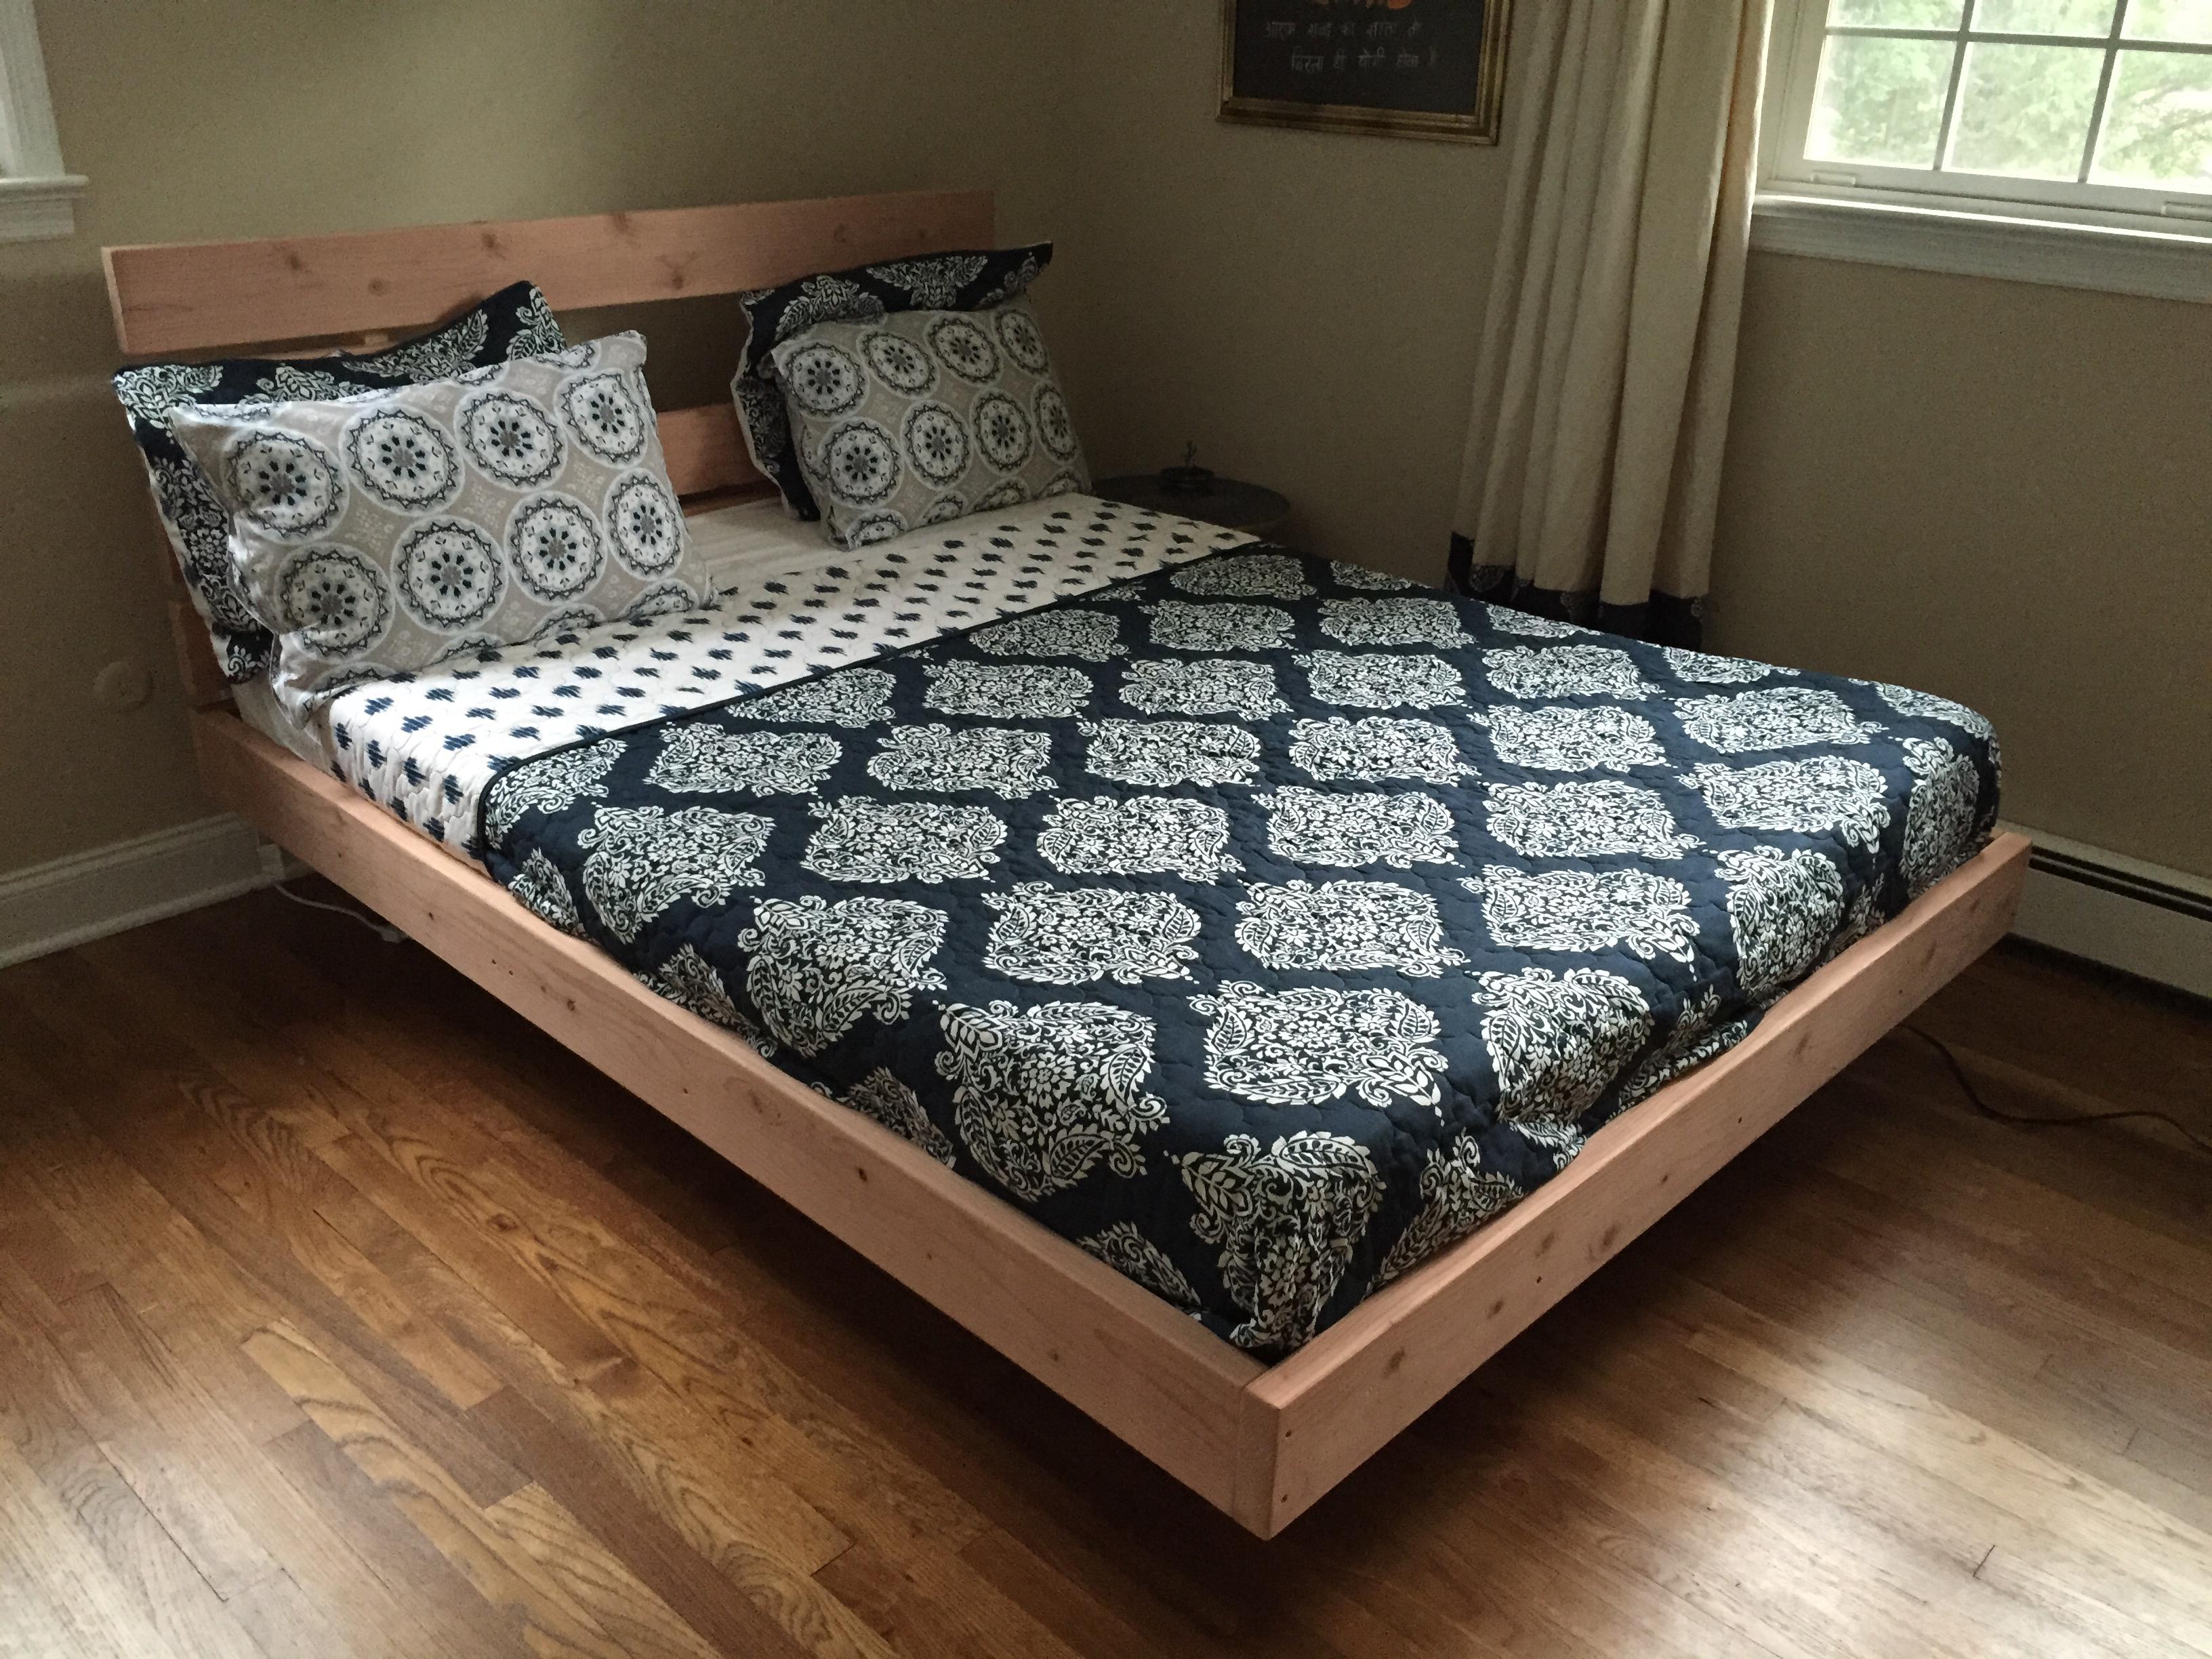 inset mattress bed frame